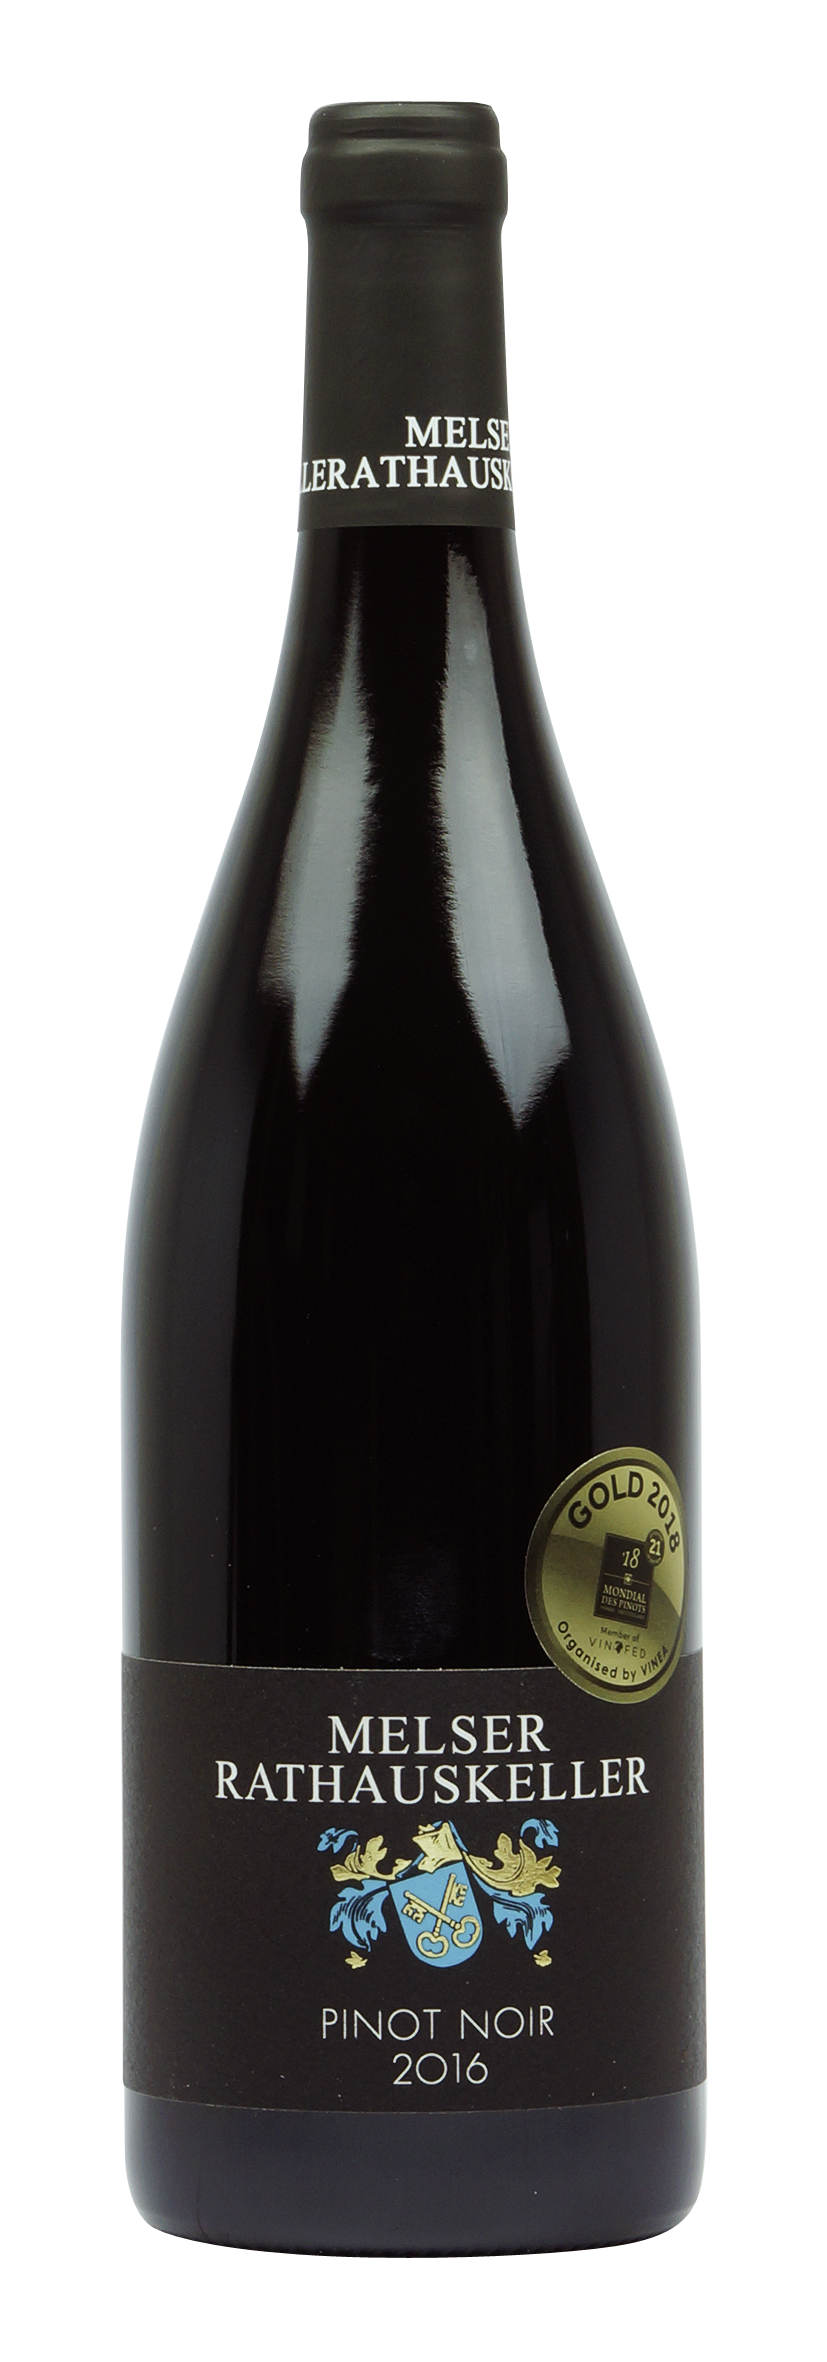 St. Gallen AOC Pinot Noir 2016